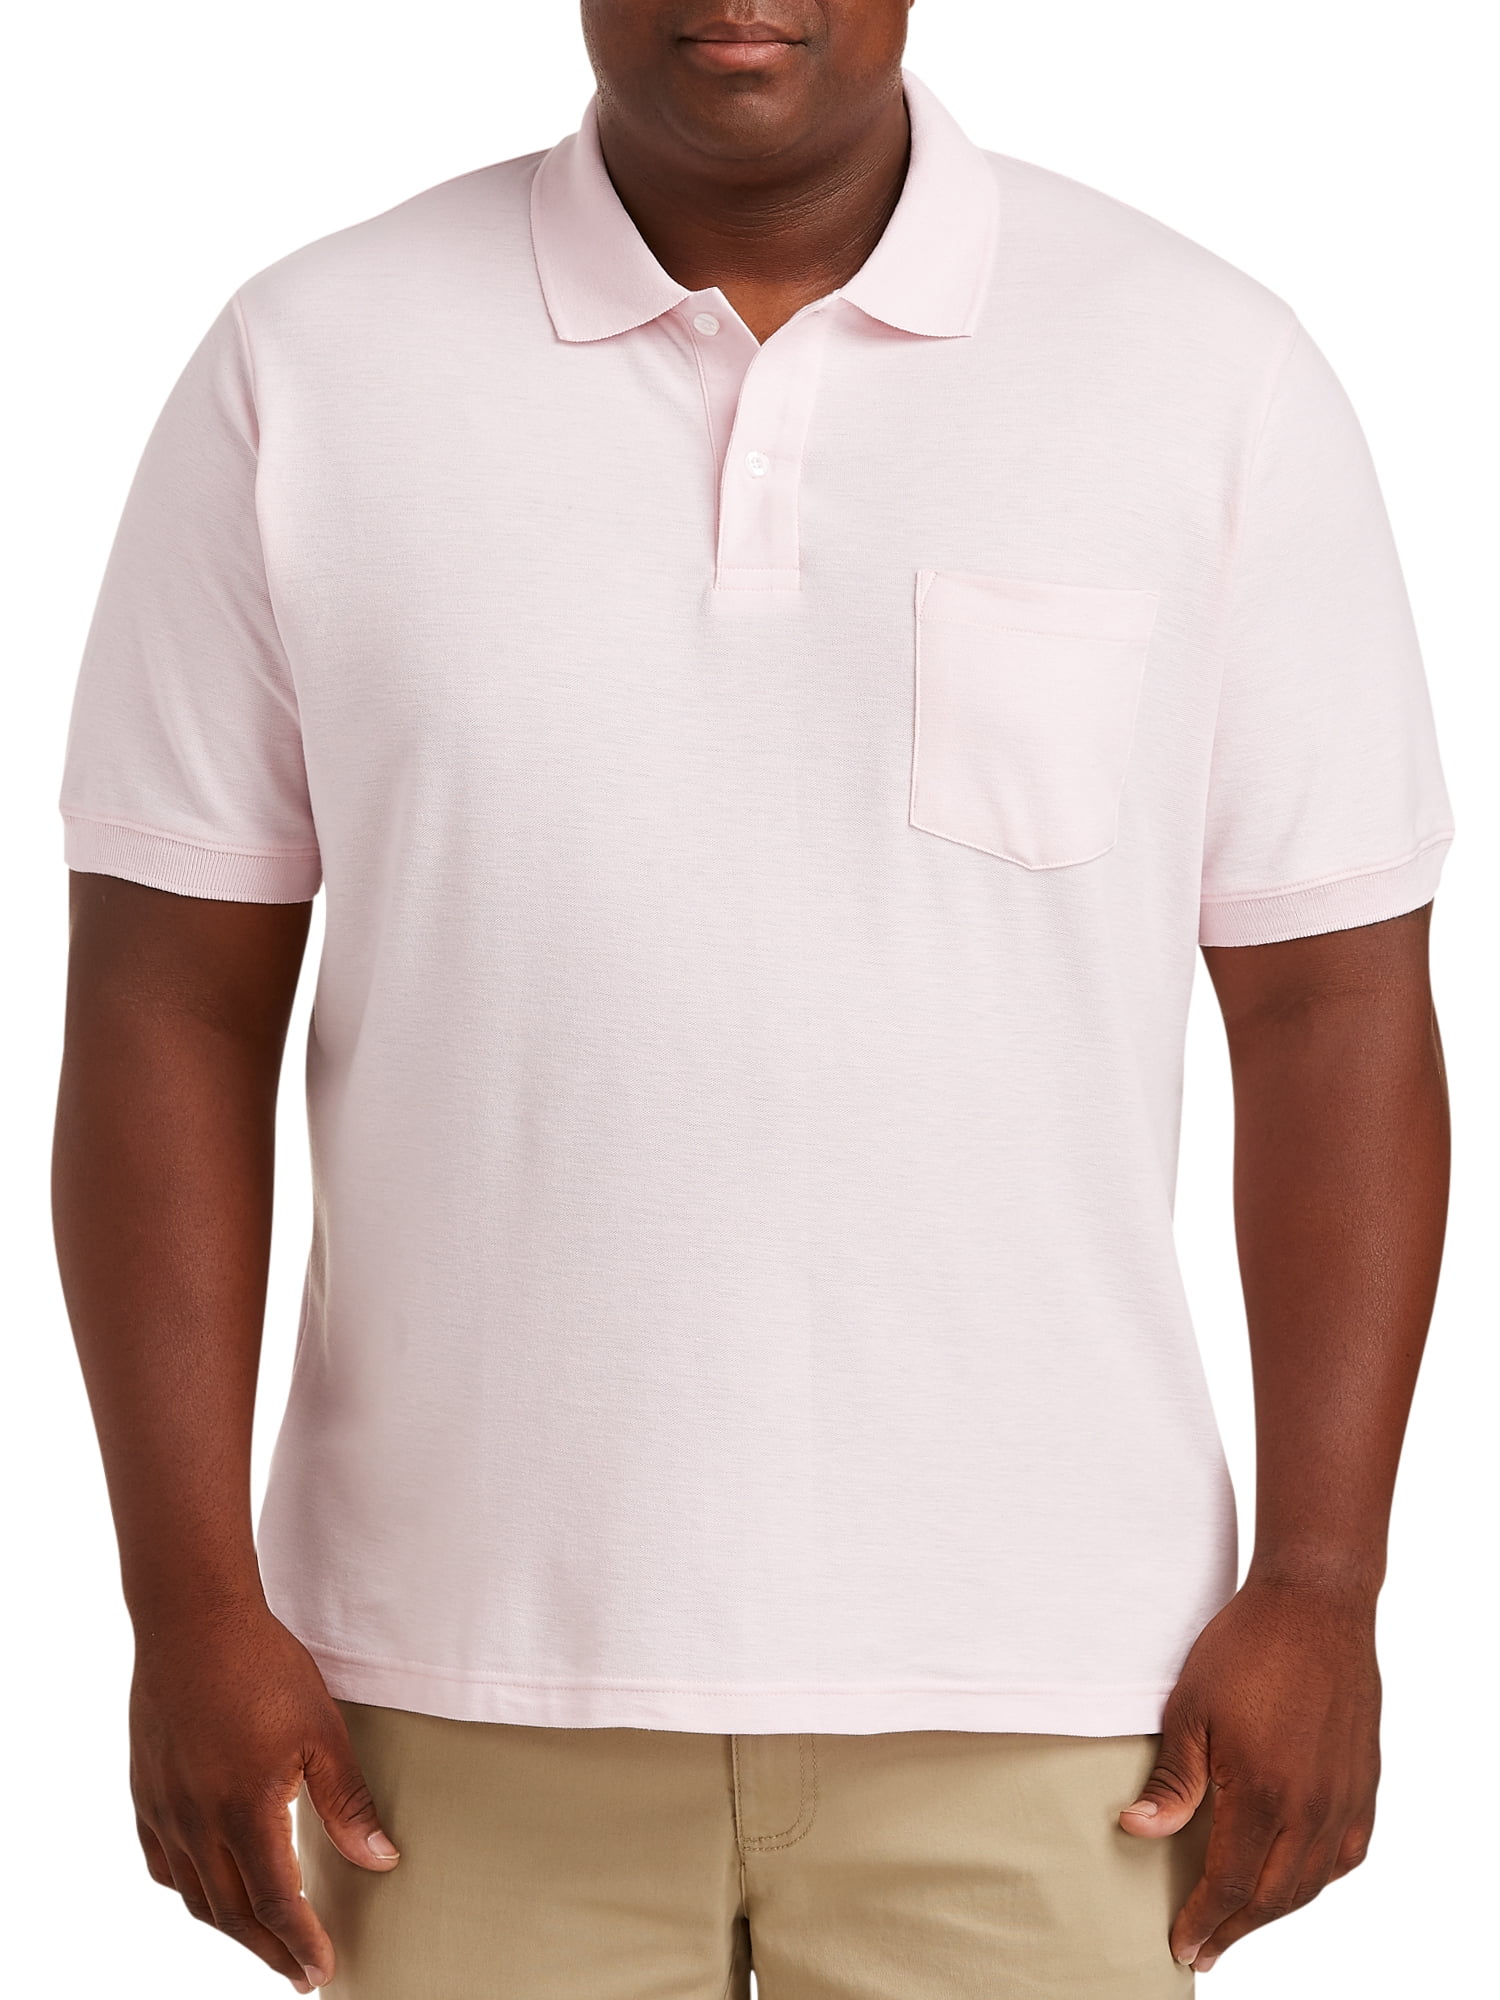 Canyon Ridge Men's Short Sleeve Pique Polo Shirt 